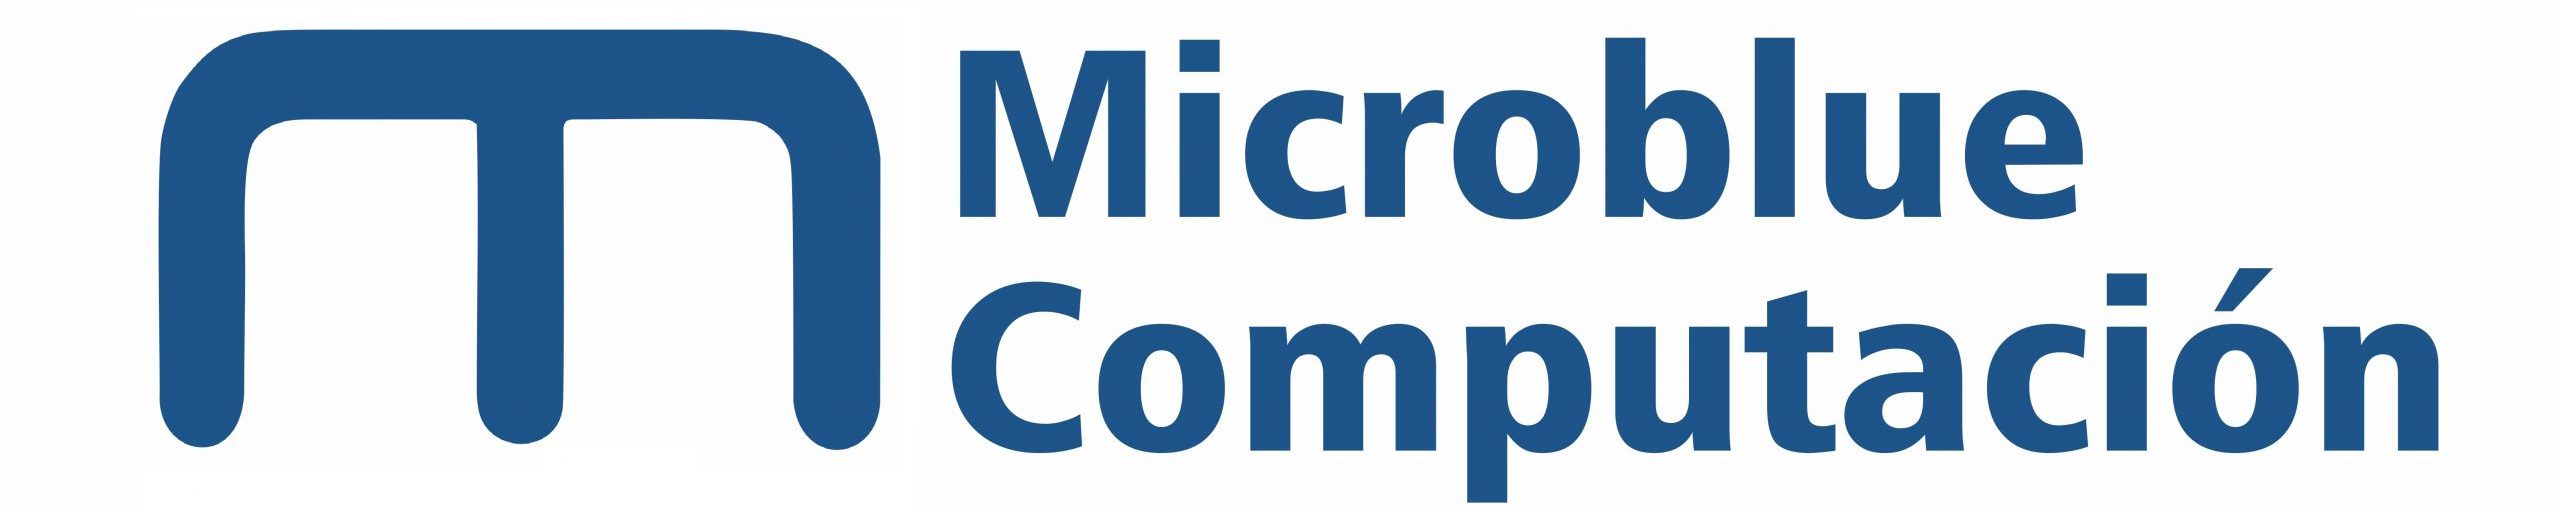 Logo Microblue Computación